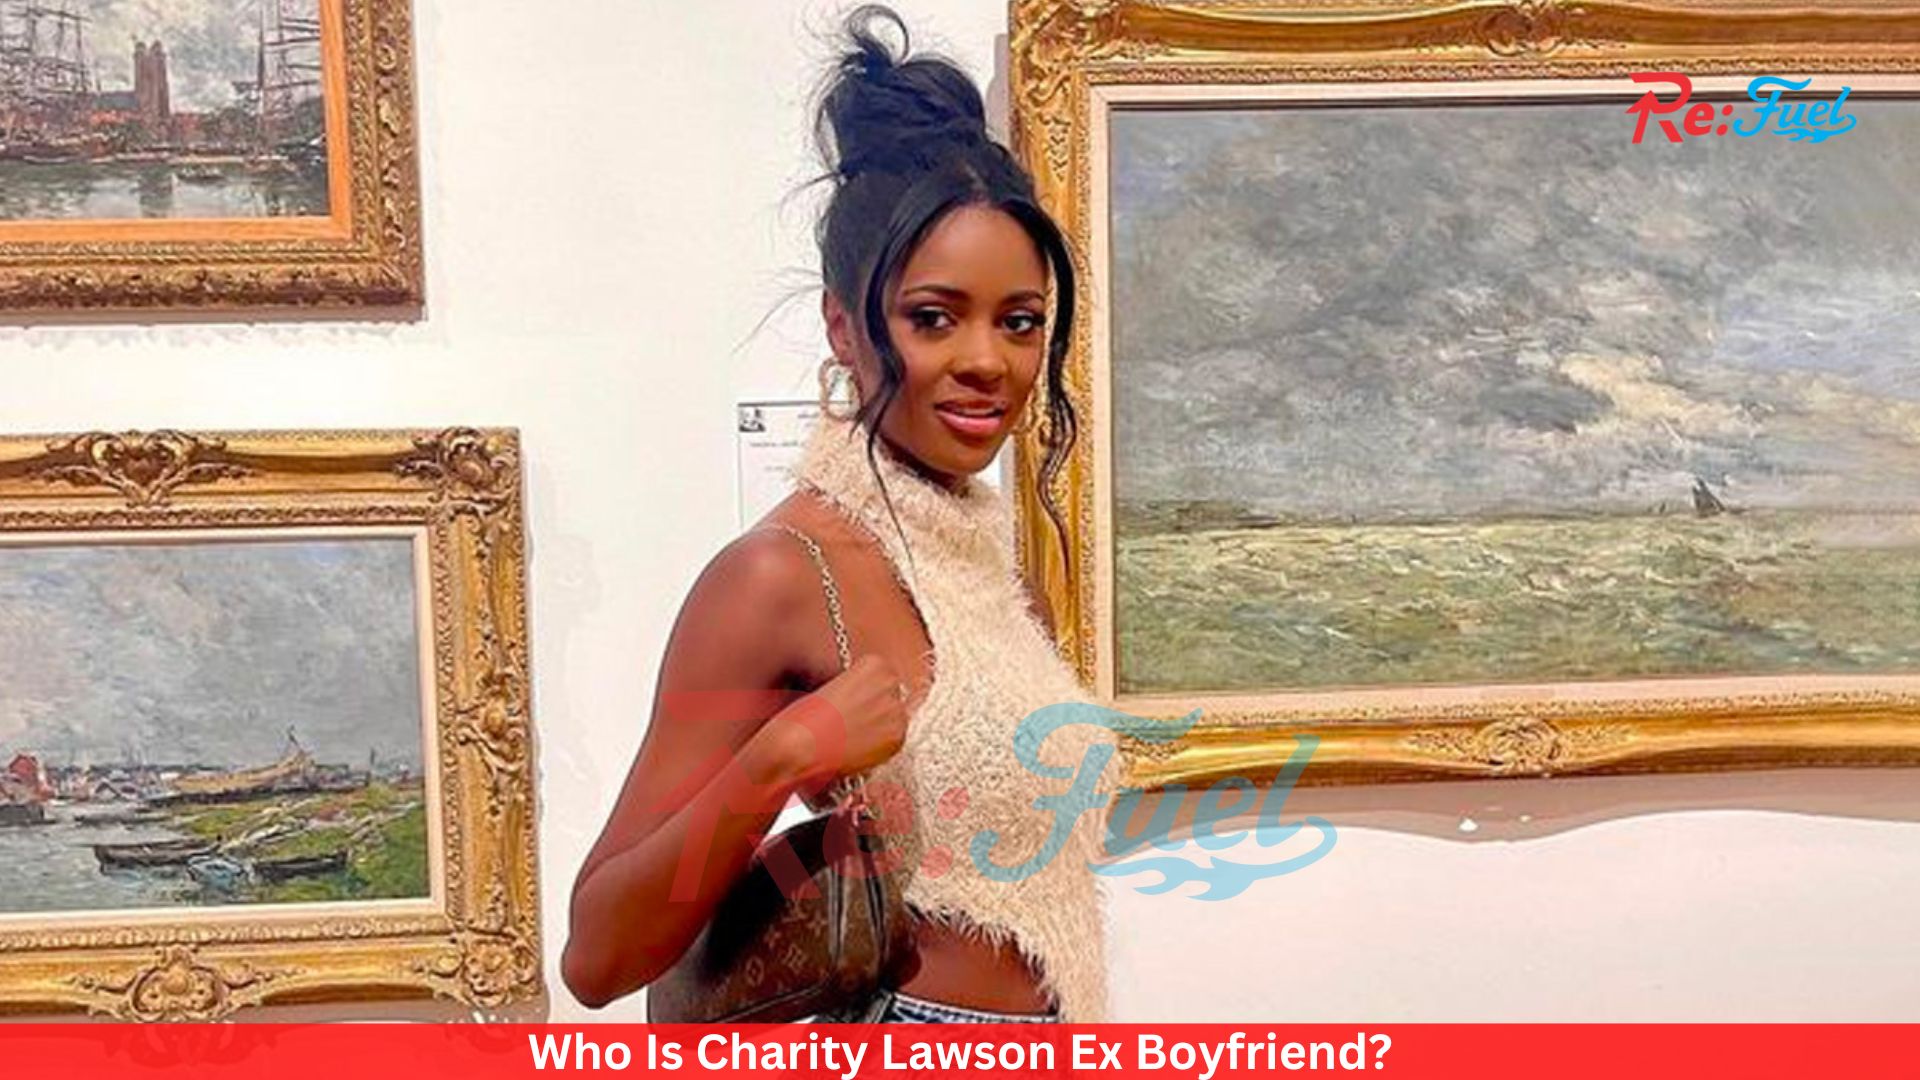 Who Is Charity Lawson Ex Boyfriend?